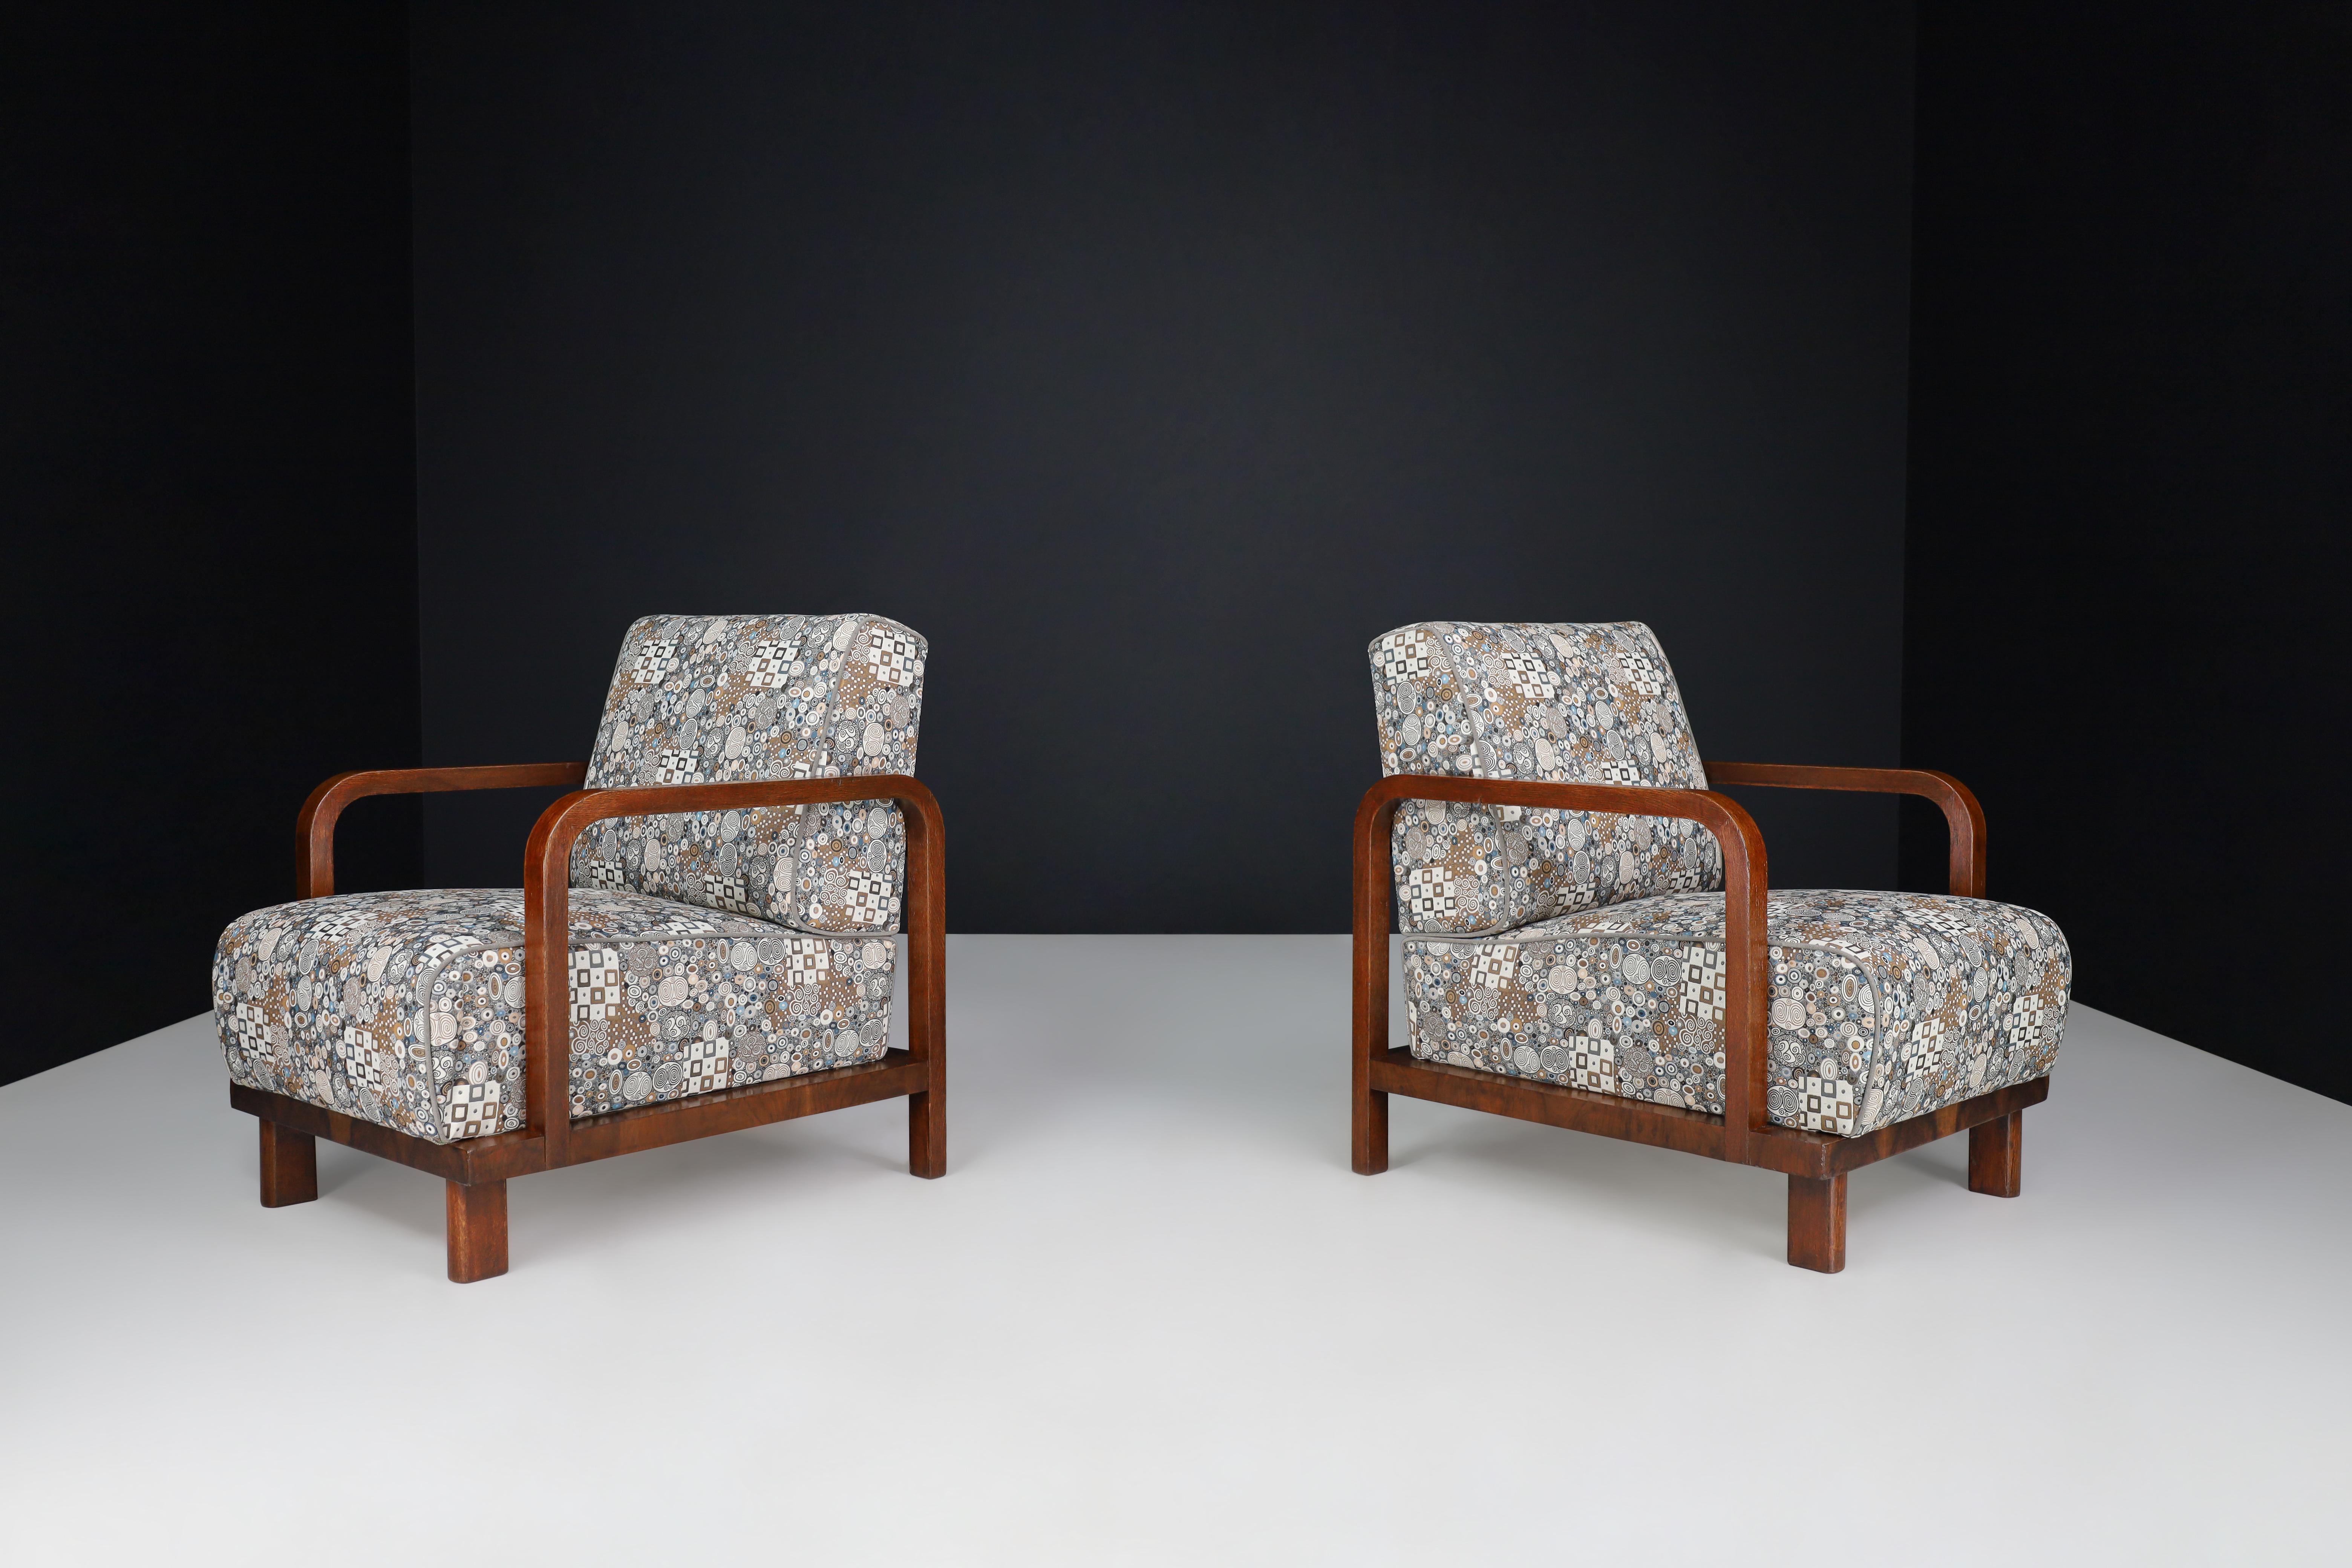 Zwei Art Deco Lounge Chairs neu gepolstert  Art déco-Stoff, Frankreich, 1930er-Jahre

Diese beiden Loungesessel im Art-Deco-Design sind aus Bugholz in Nussbaum gefertigt. Sie wurden in den 1930er Jahren in Frankreich neu gepolstert und mit feinem